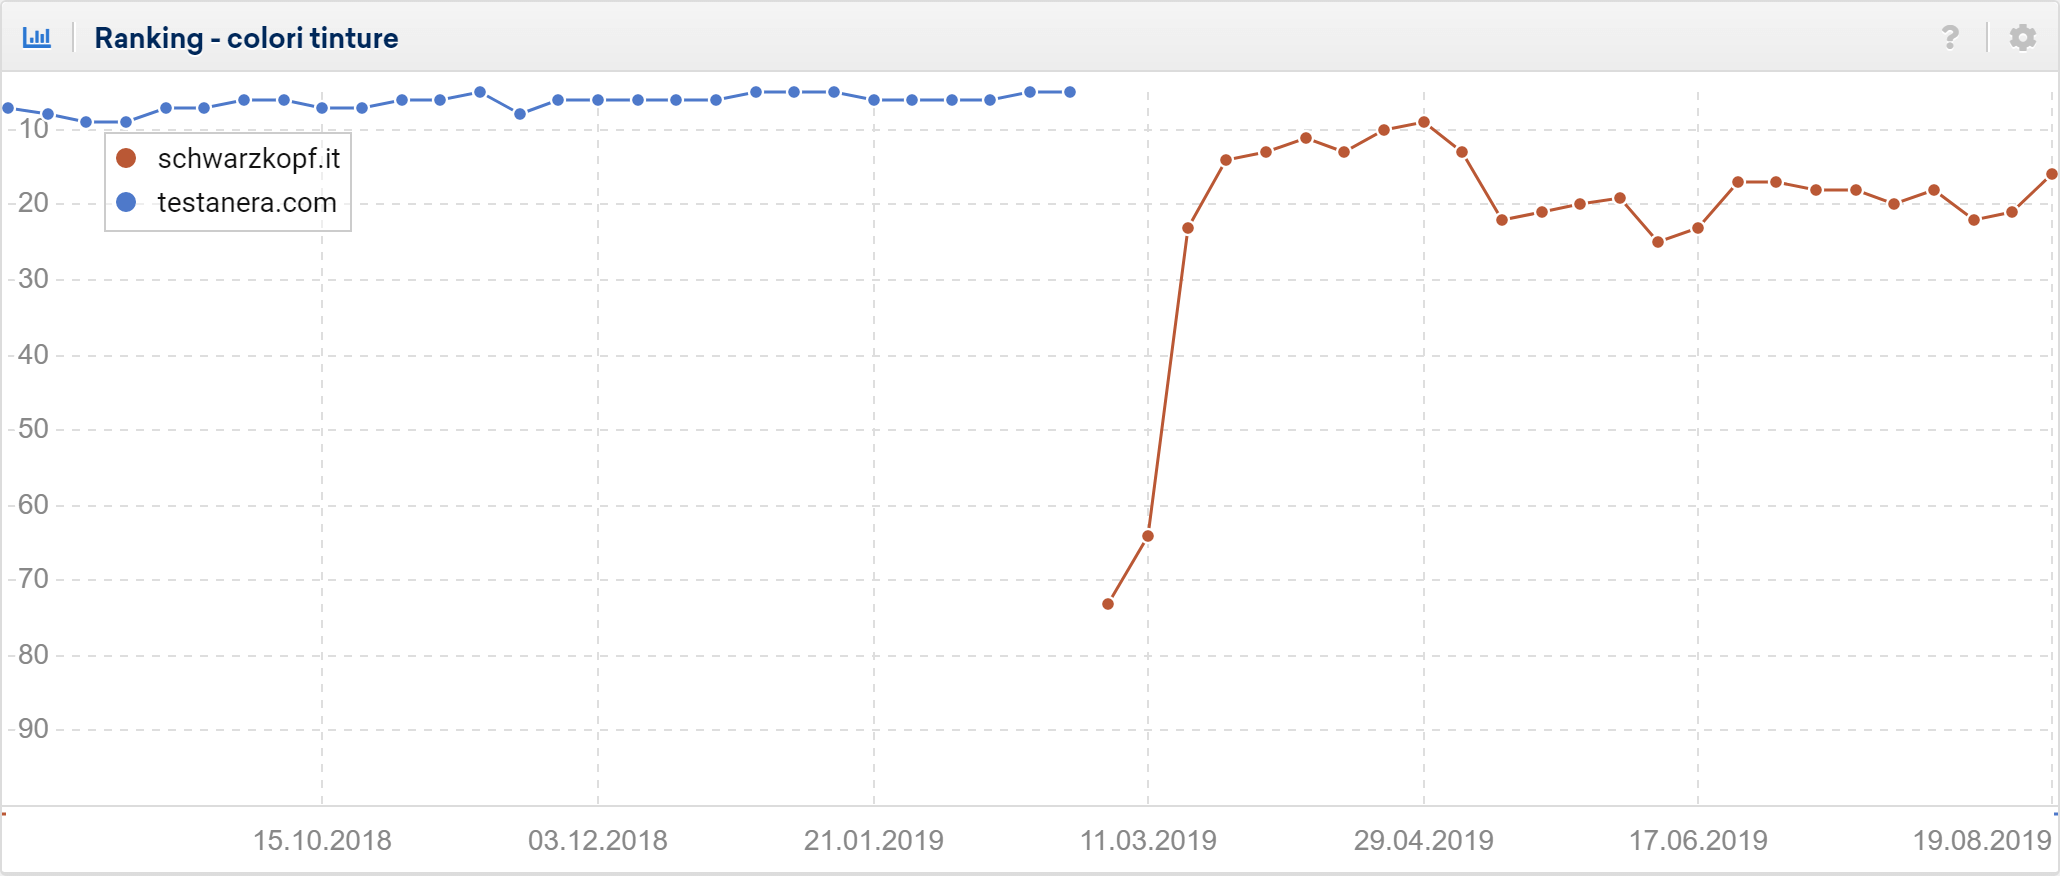 Sviluppo dei ranking nel tempo: confronto tra testanera.com e schwarzkopf.it